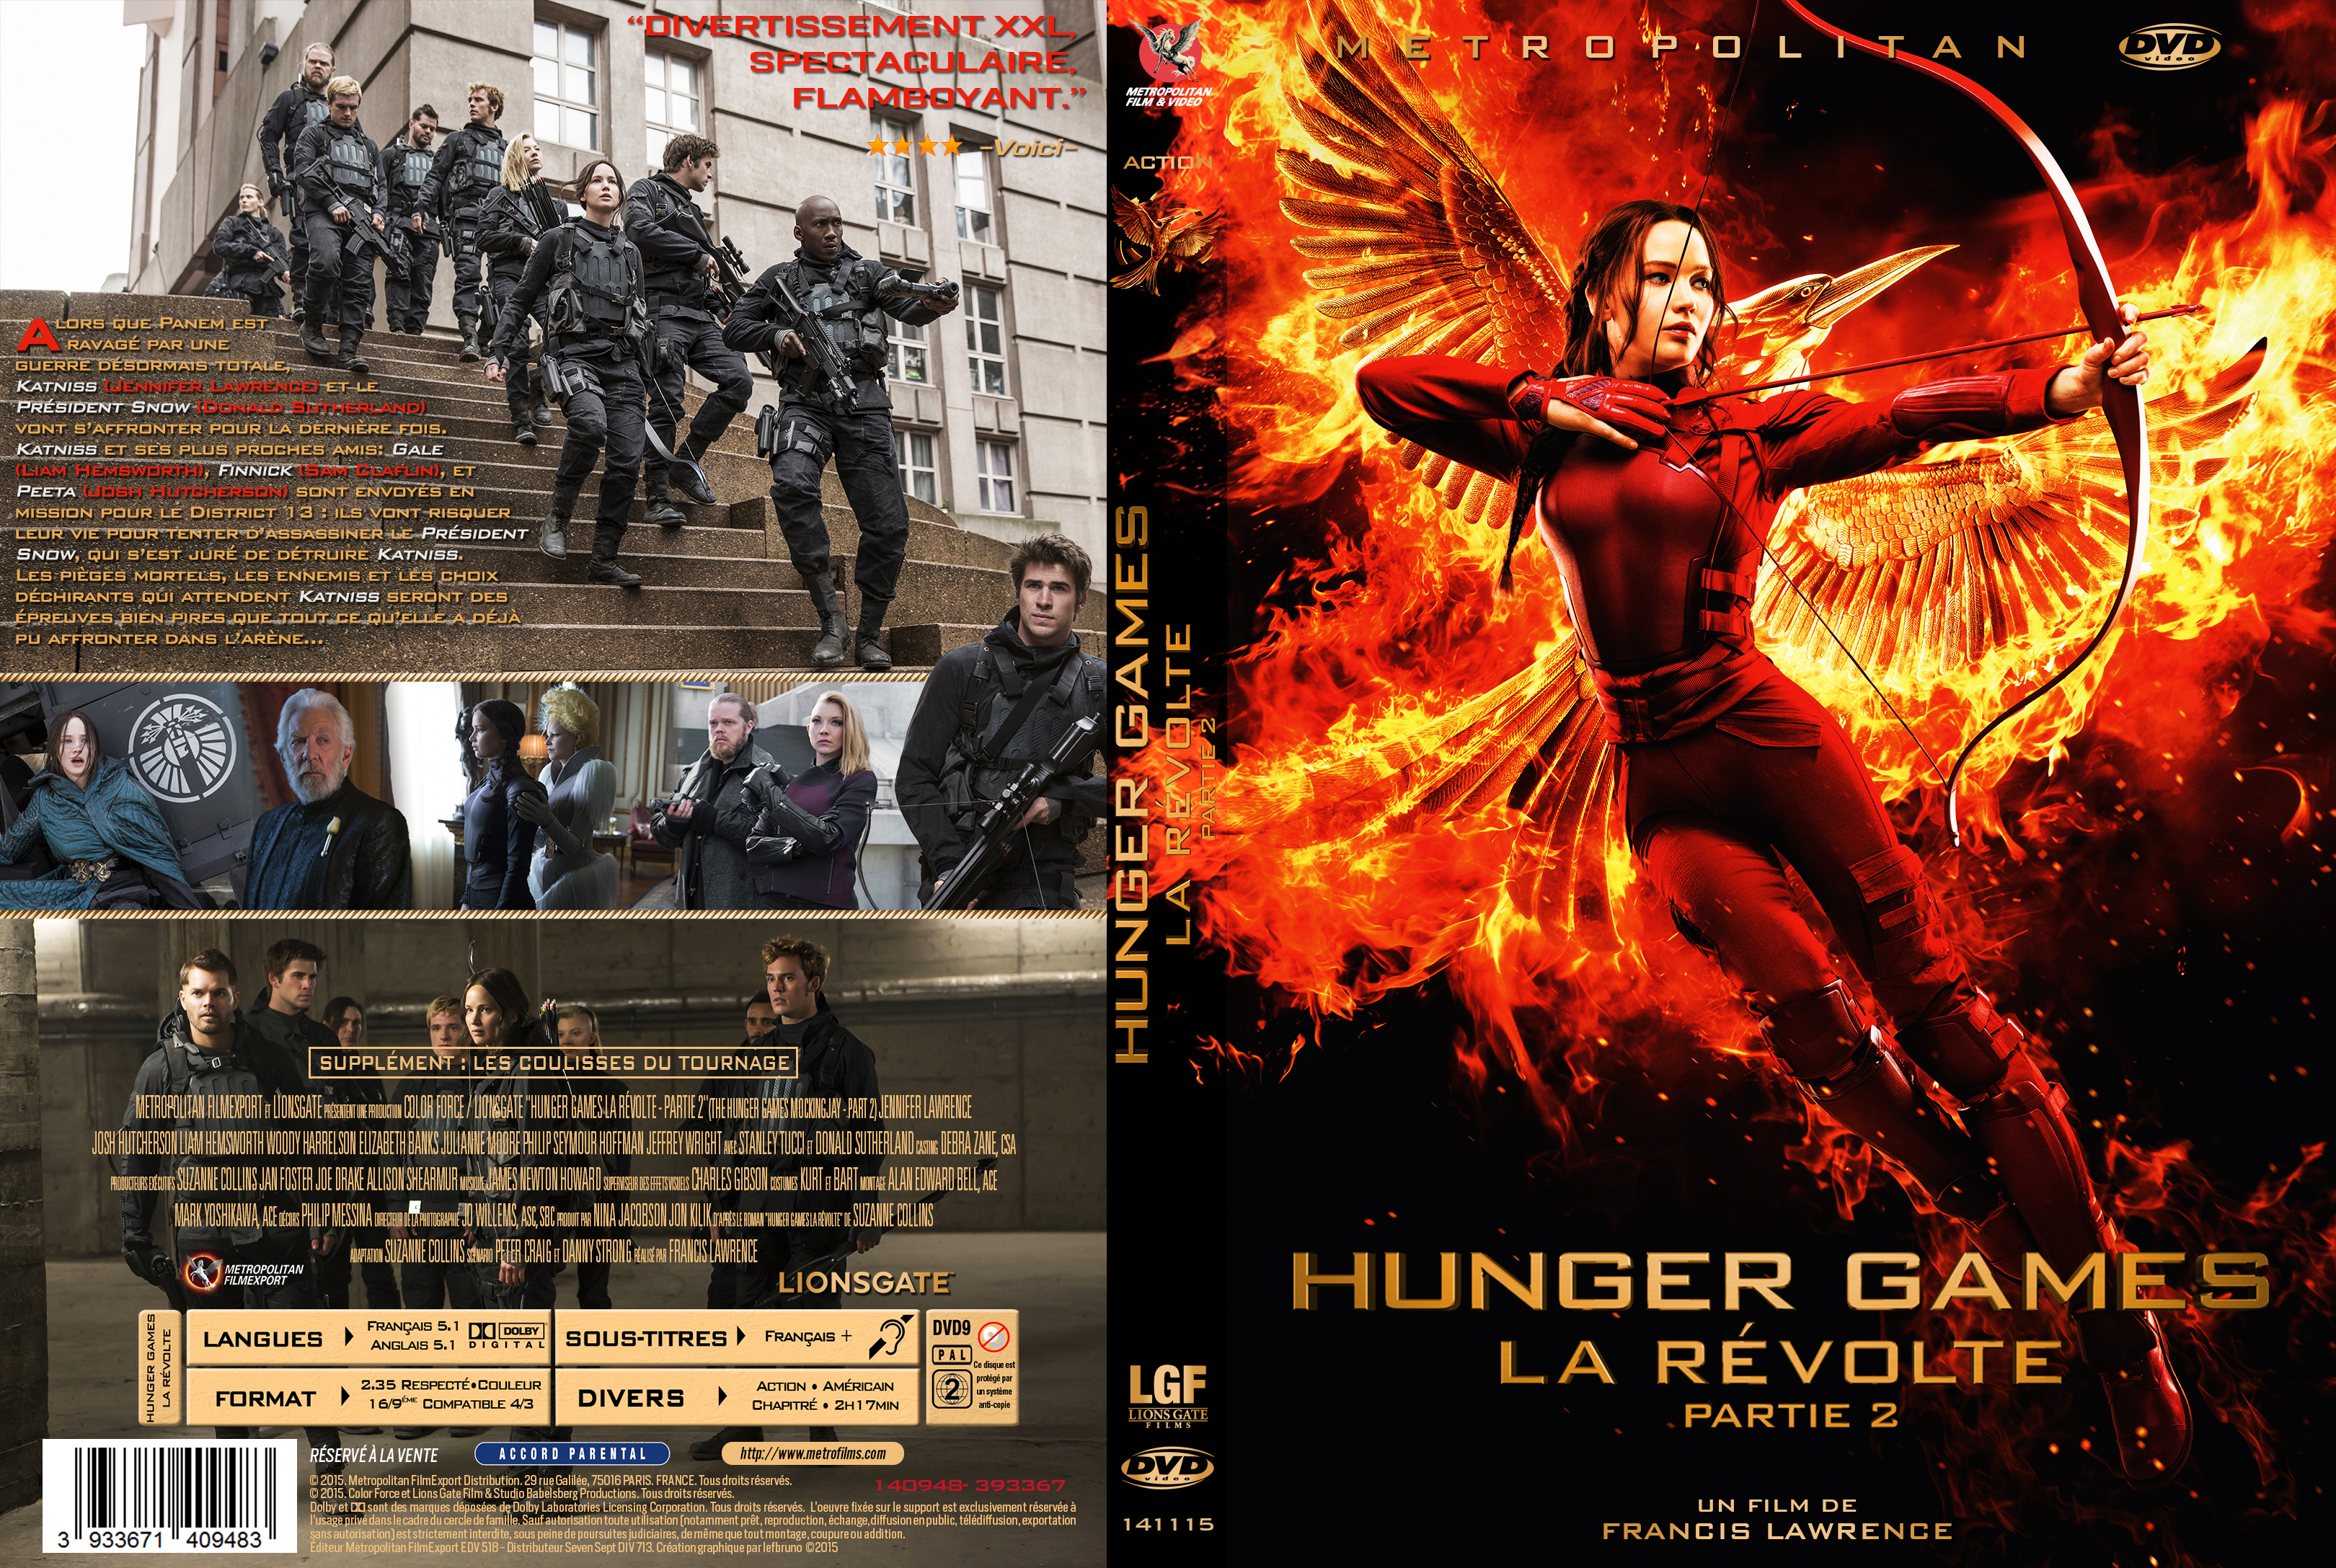 Jaquette DVD Hunger Games La Rvolte : Partie 2 custom